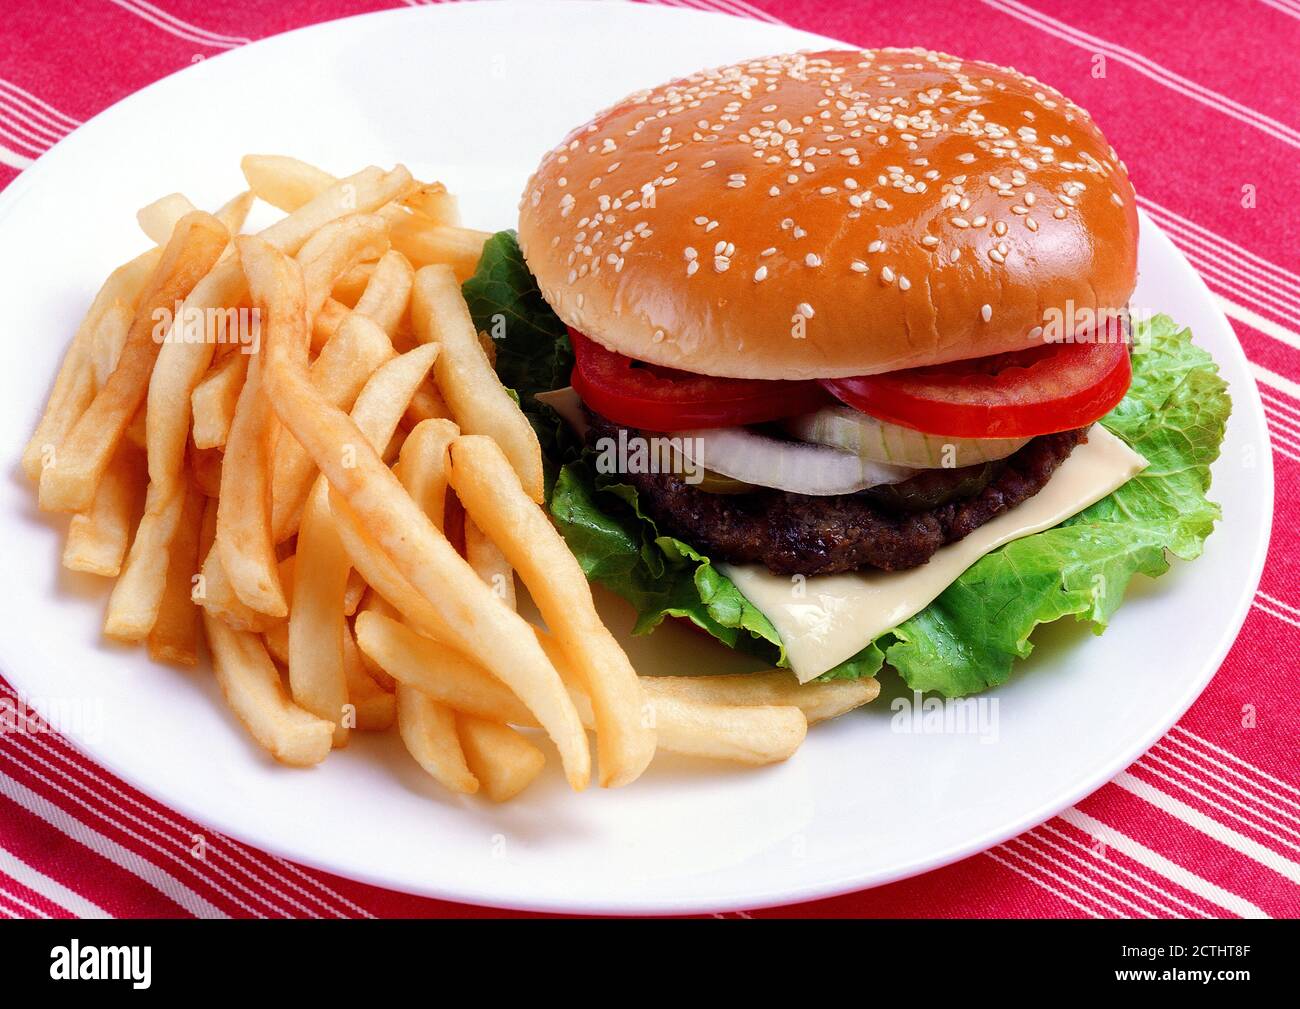 Burger und pommes in Plate auf Tischdecke. Ketchup und Senfflasche im Hintergrund. Nahaufnahme professionelle Fotografie für Hotels, Restaurant-Menü Stockfoto